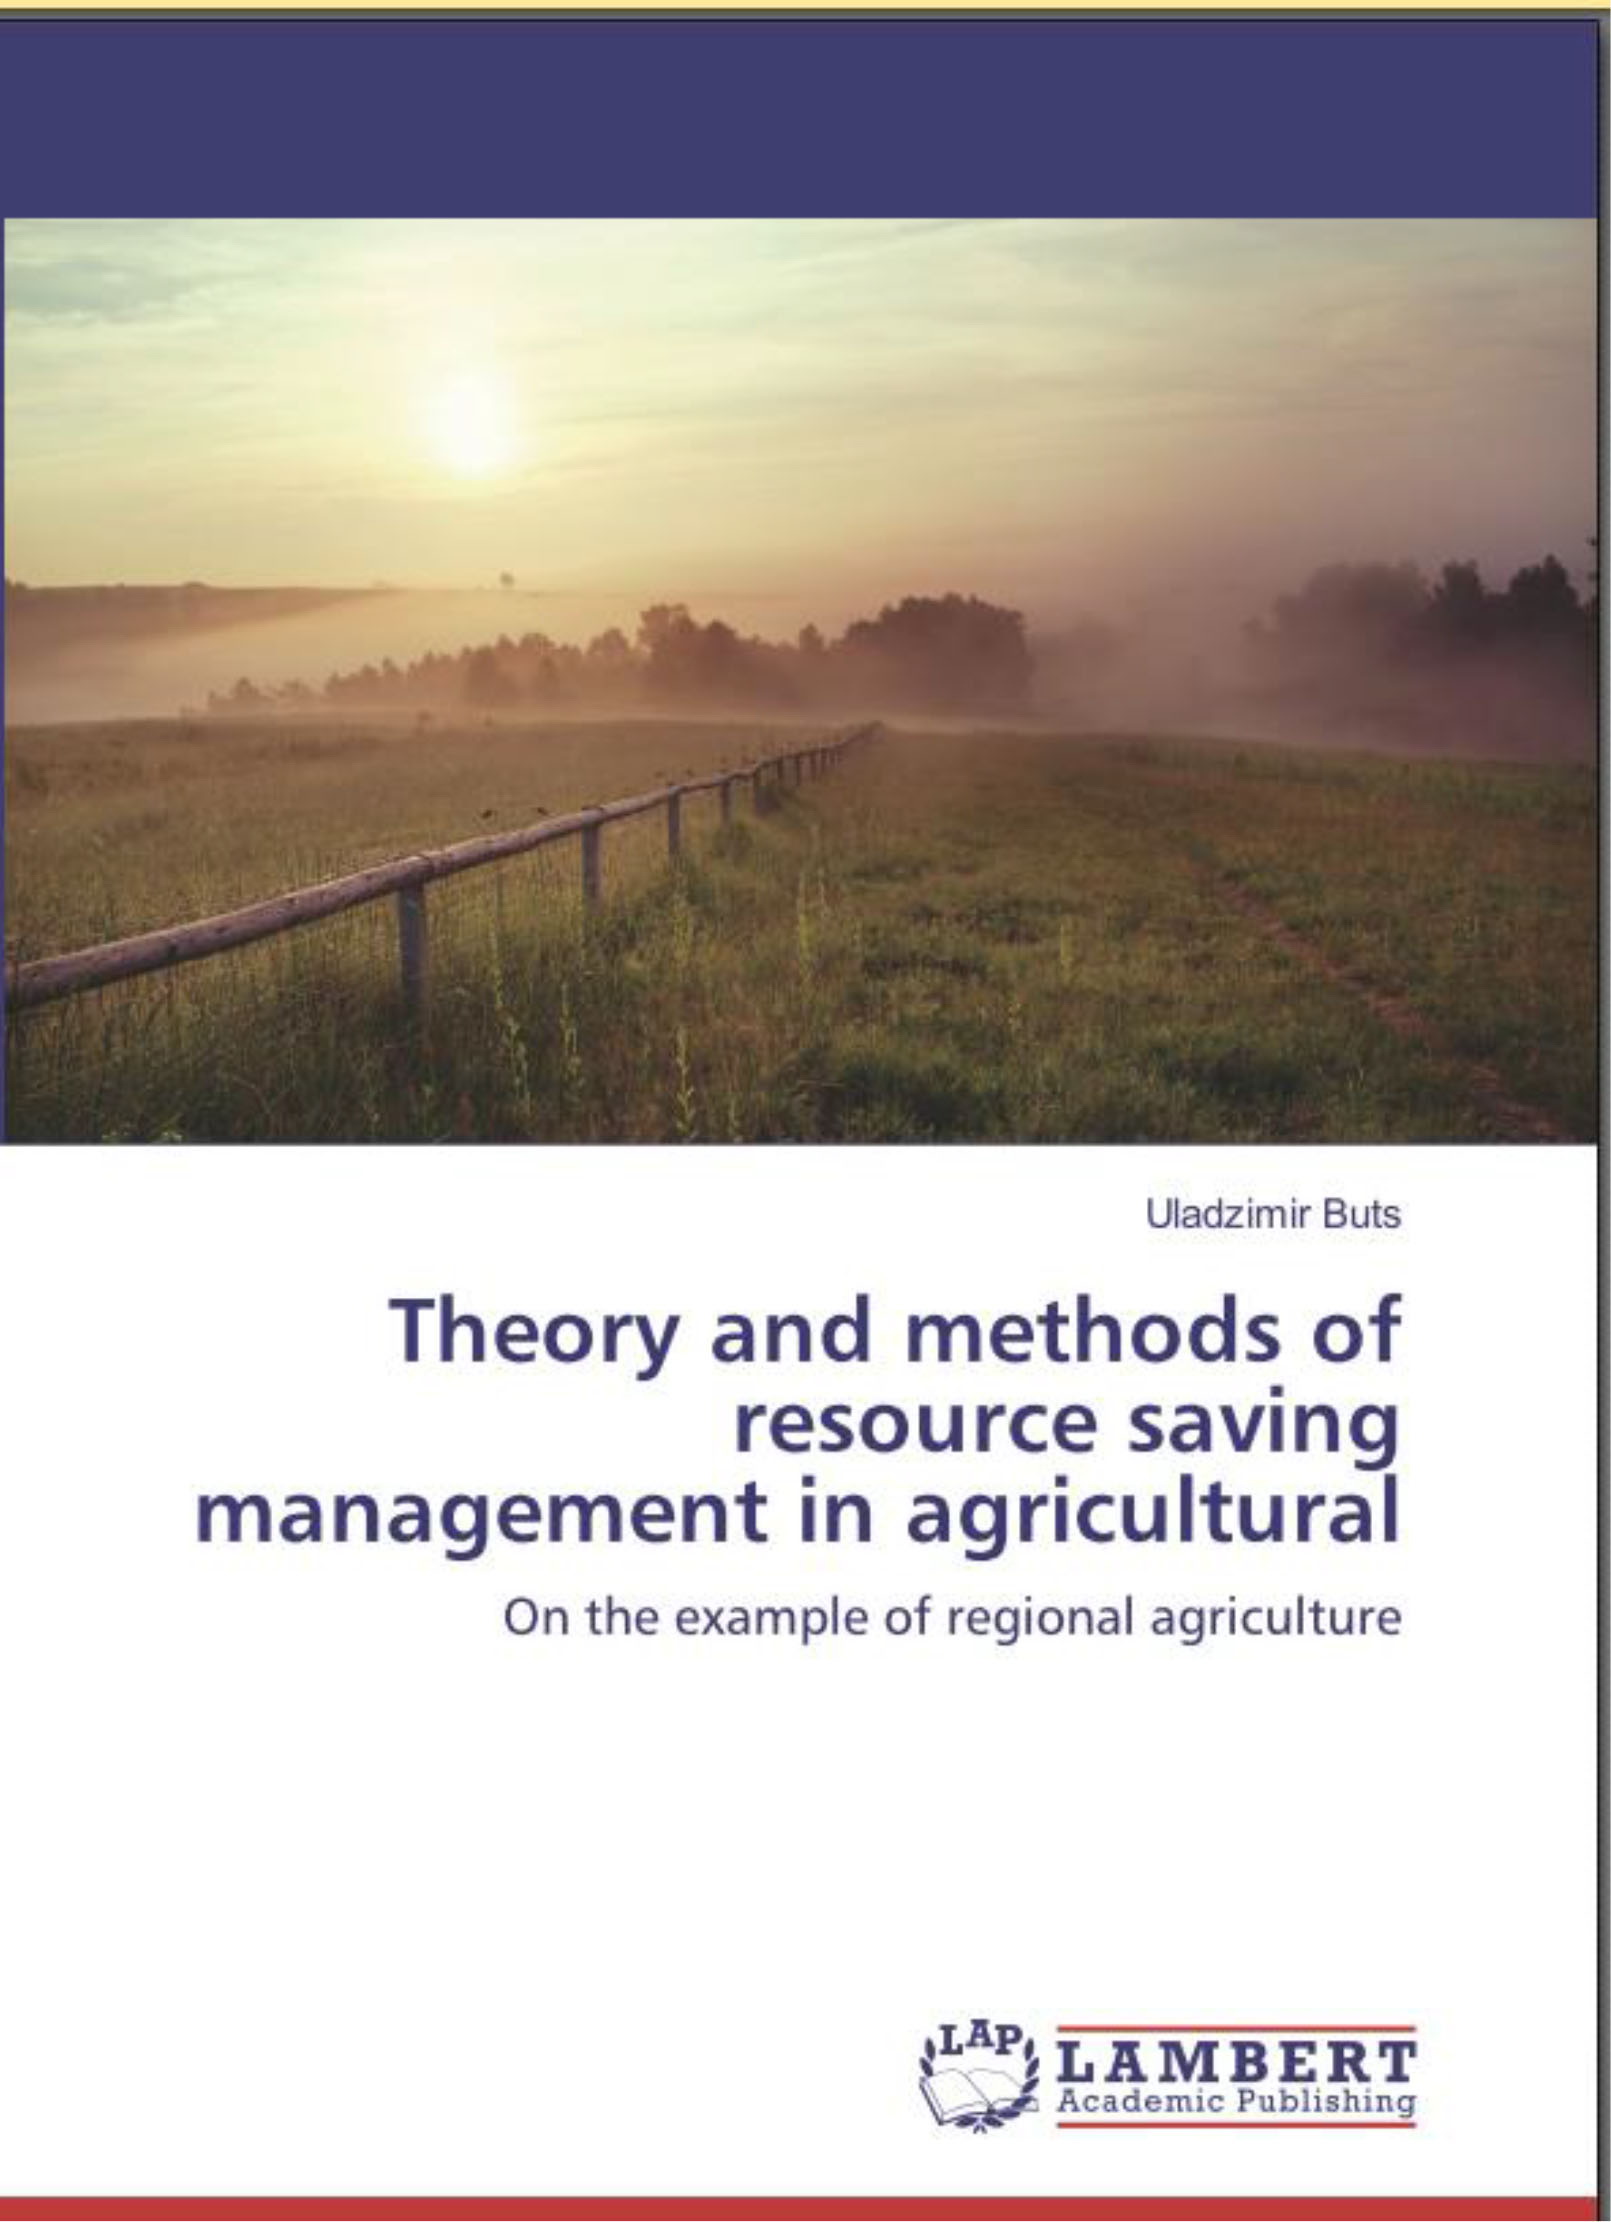 Теория и методы управления сбережением ресурсов в аграрном производстве